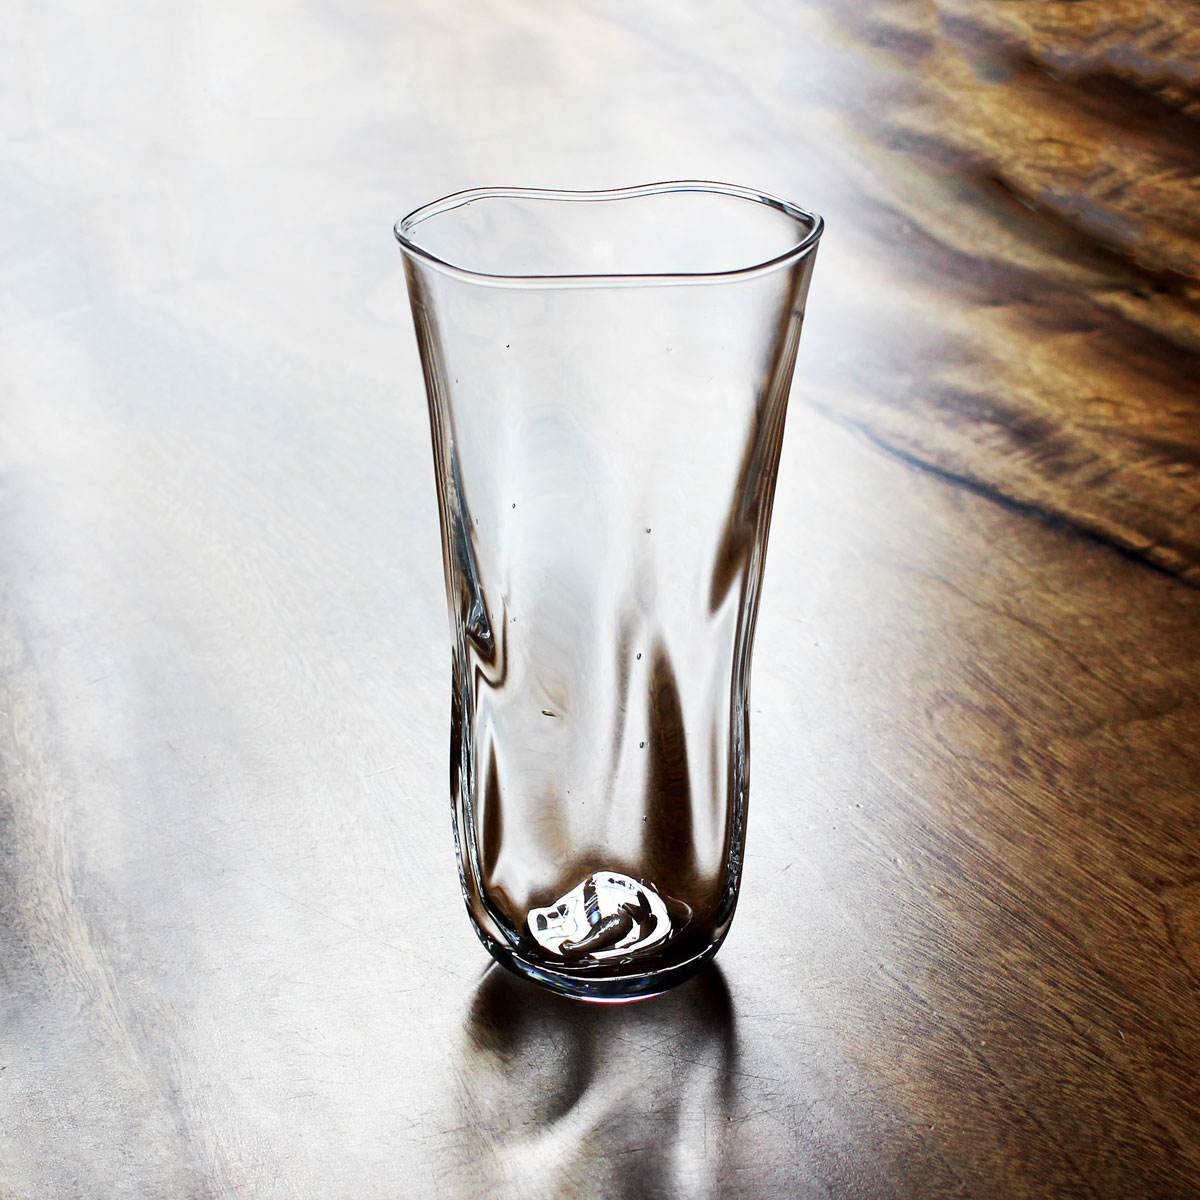 ゆらゆら揺れる オンリーワンの大きなビールグラス 最新アイテム glasscalico グラスキャリコ ハンドメイド ガラス酒器 ビールグラス 在庫あり おしゃれ プレゼント ギフト ミナモ L